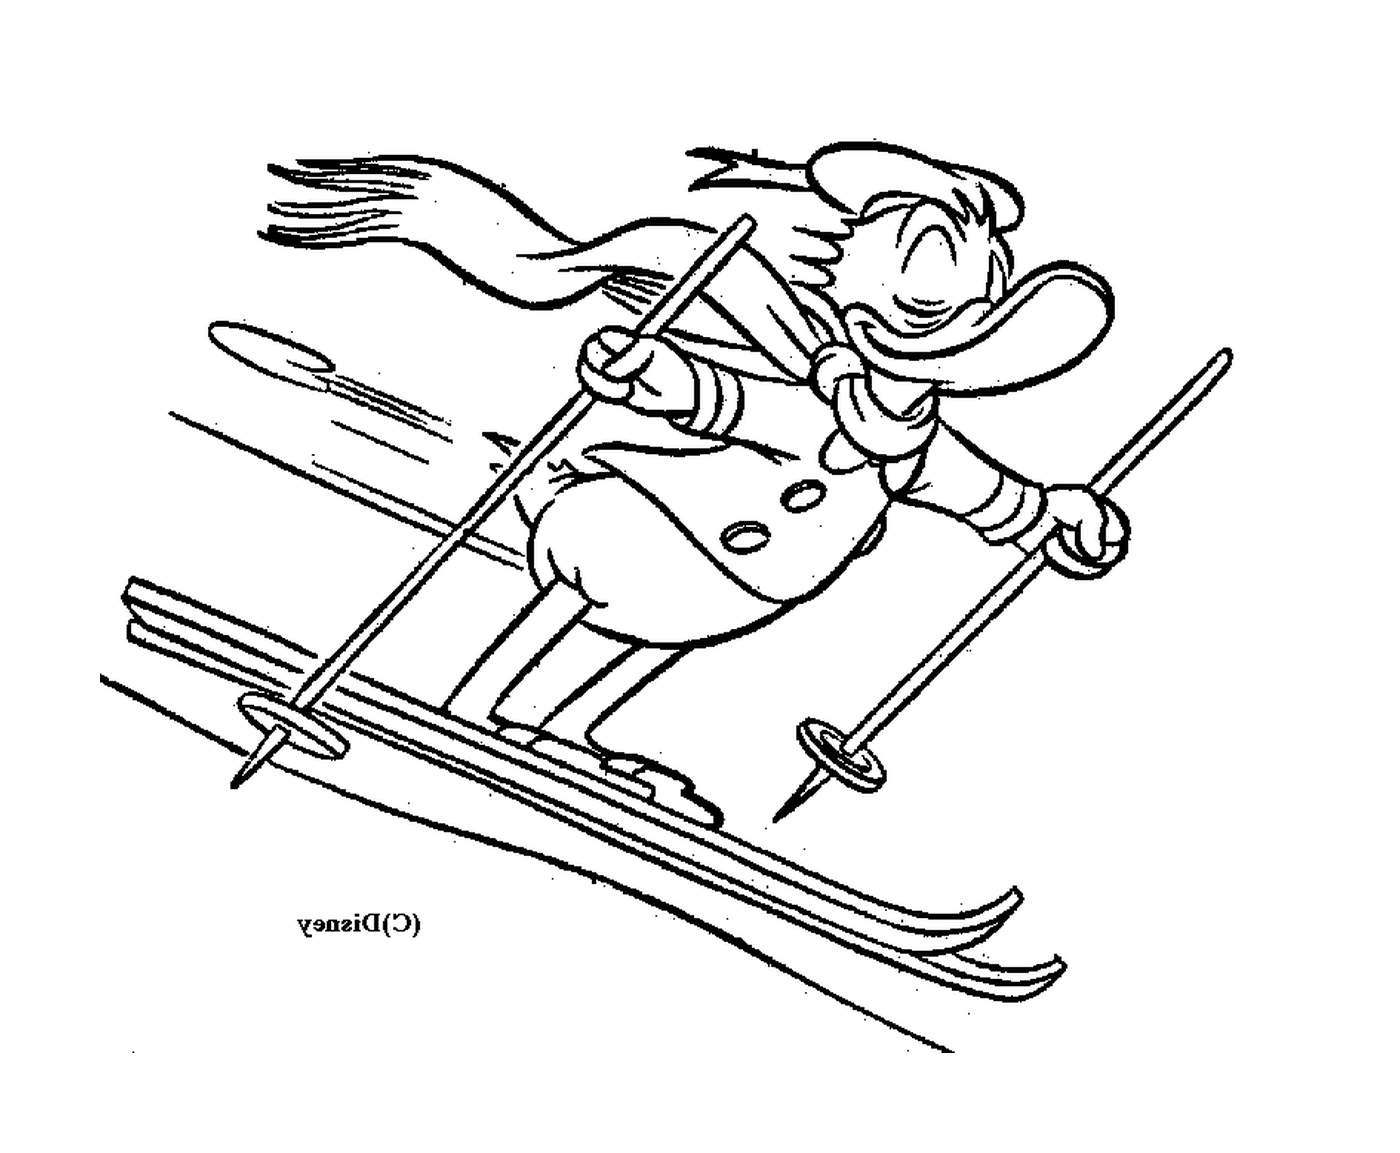   Donald dévale les pistes de ski avec aisance 